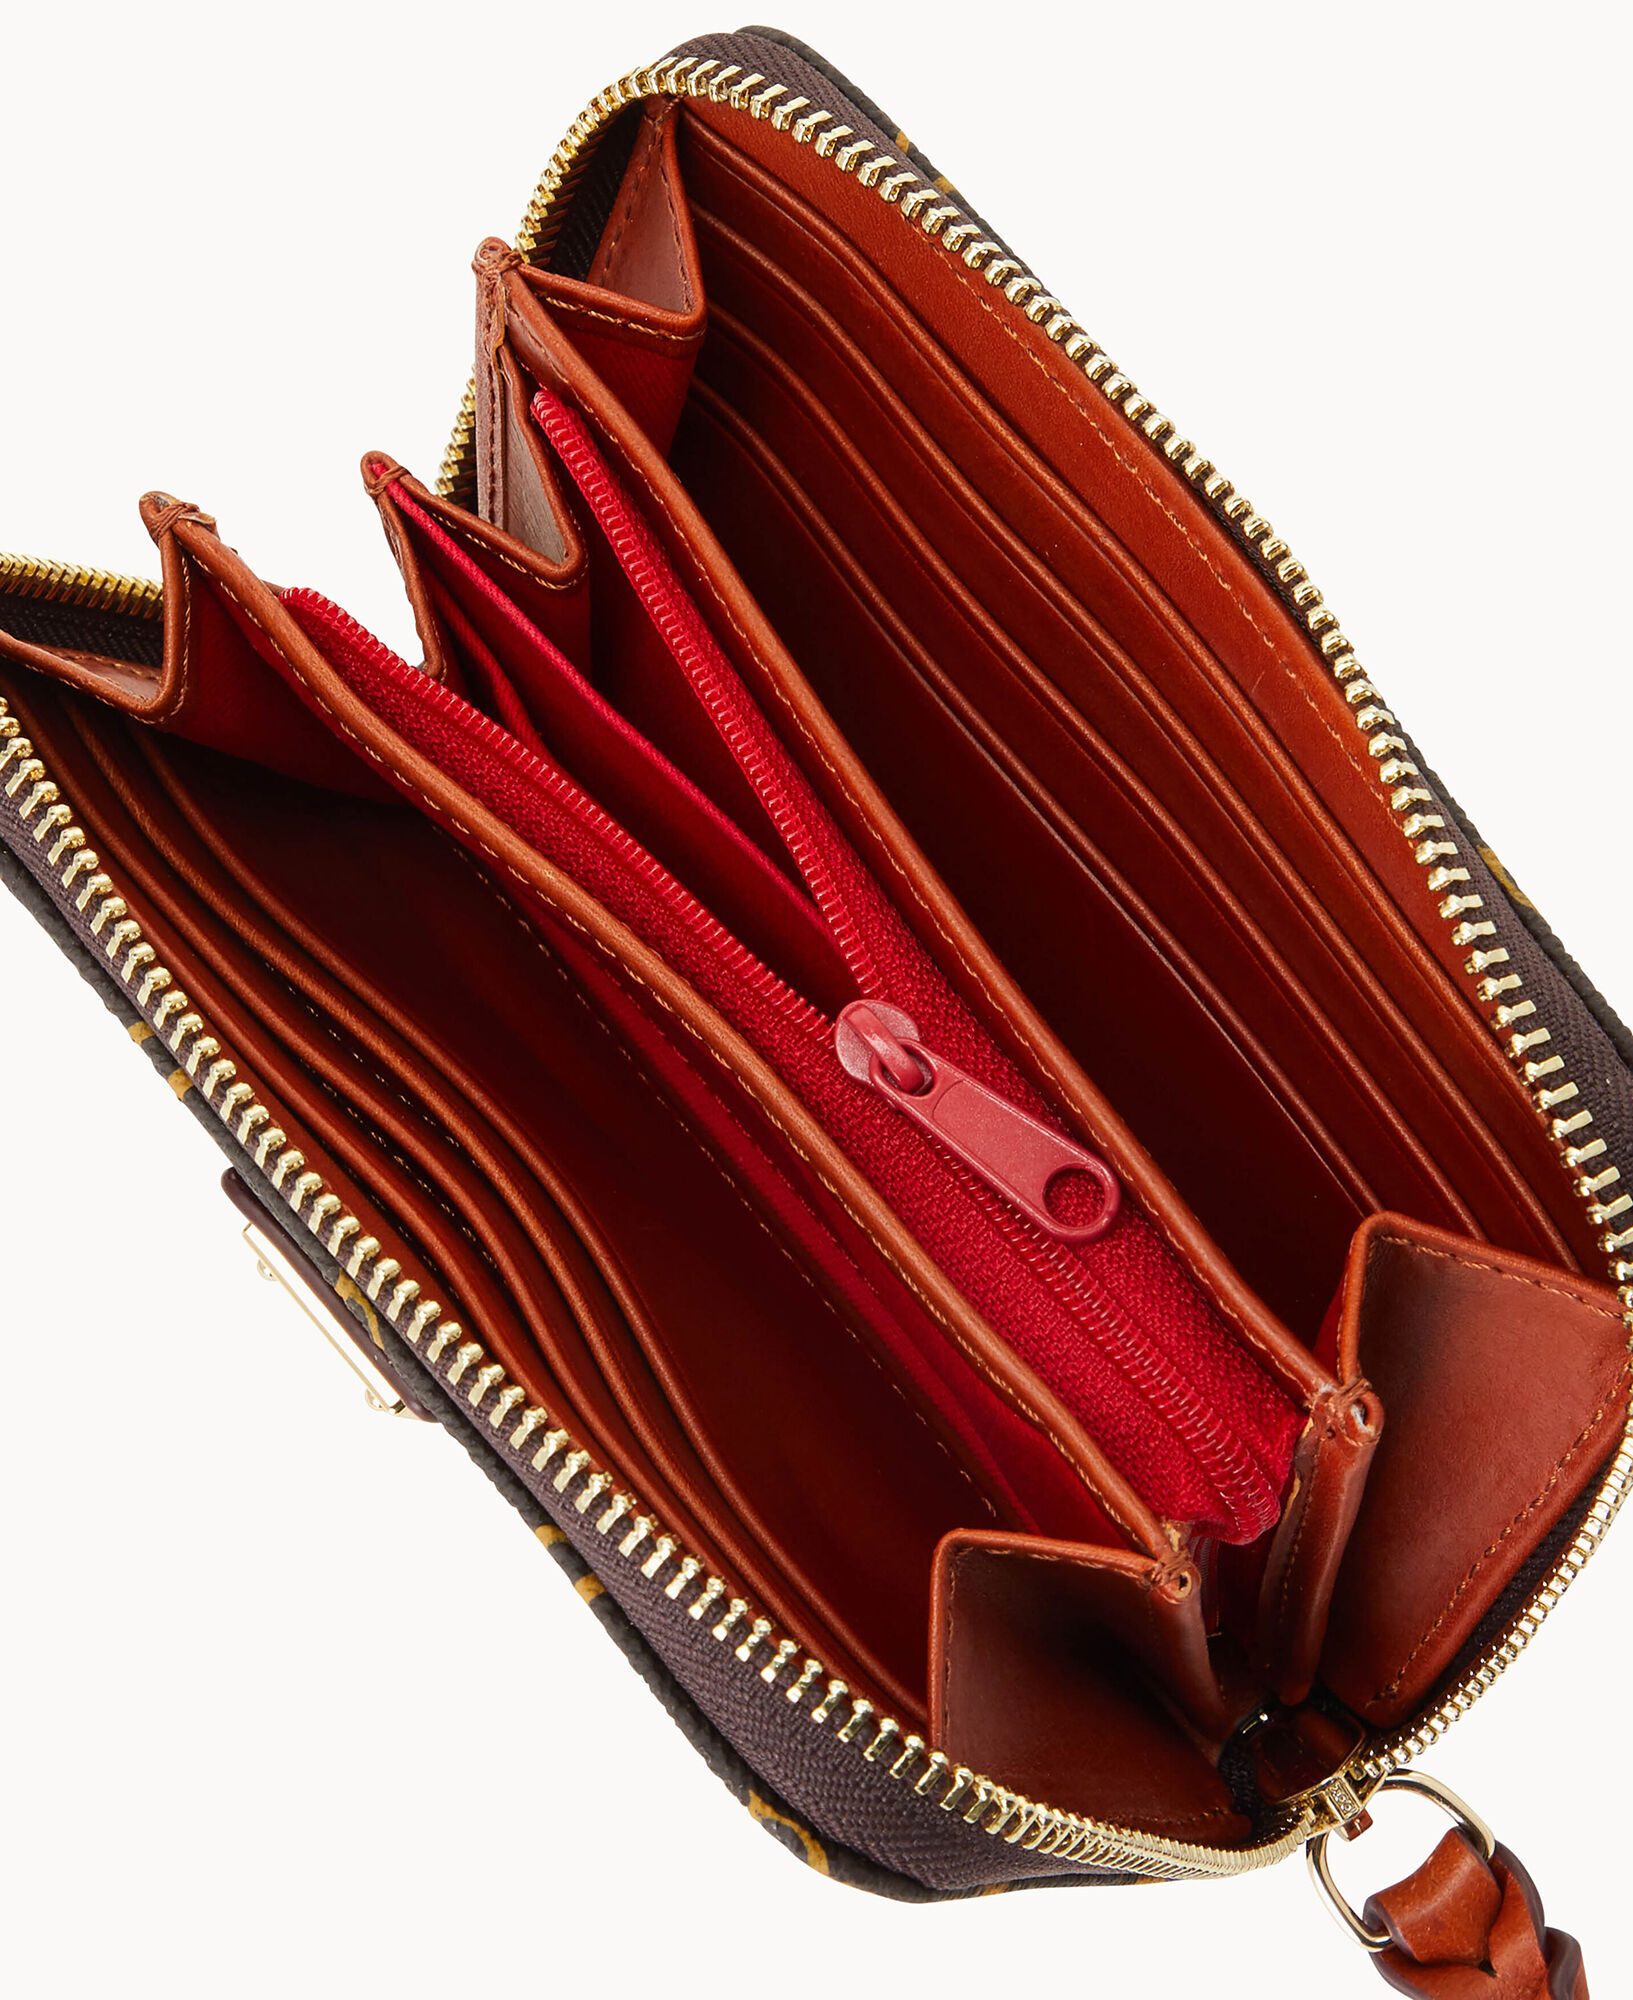 Authentic Louis Vuitton Double Zipper Wallet! for Sale in San Jose